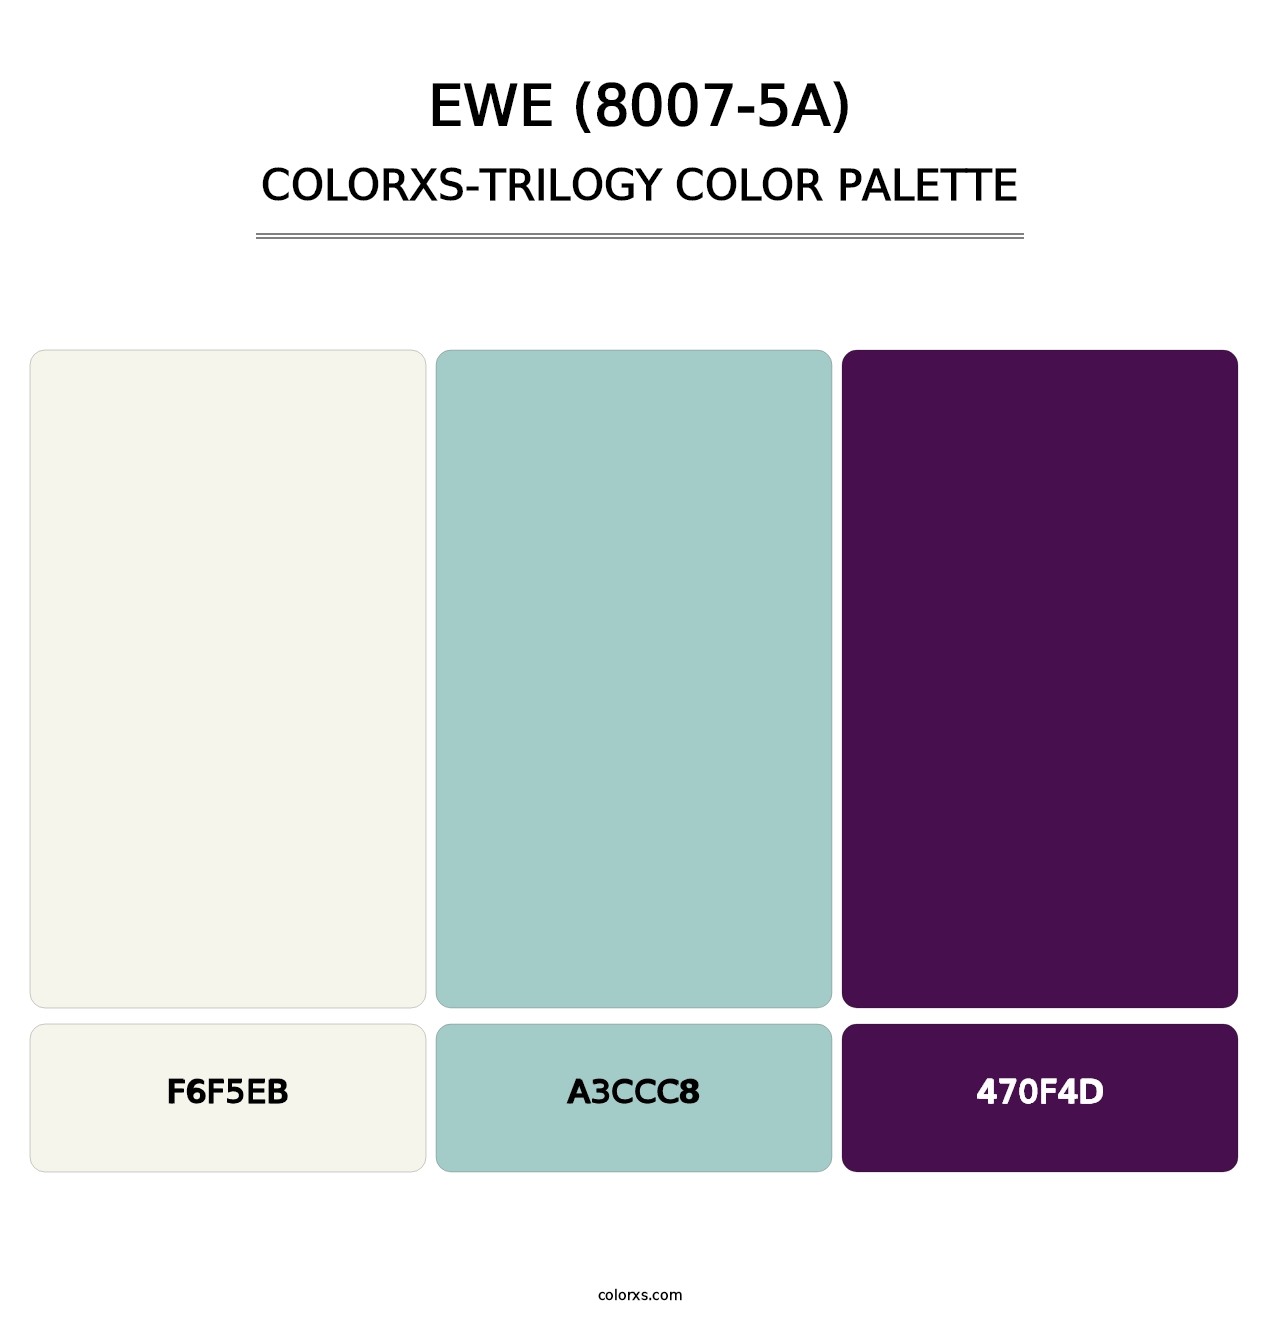 Ewe (8007-5A) - Colorxs Trilogy Palette